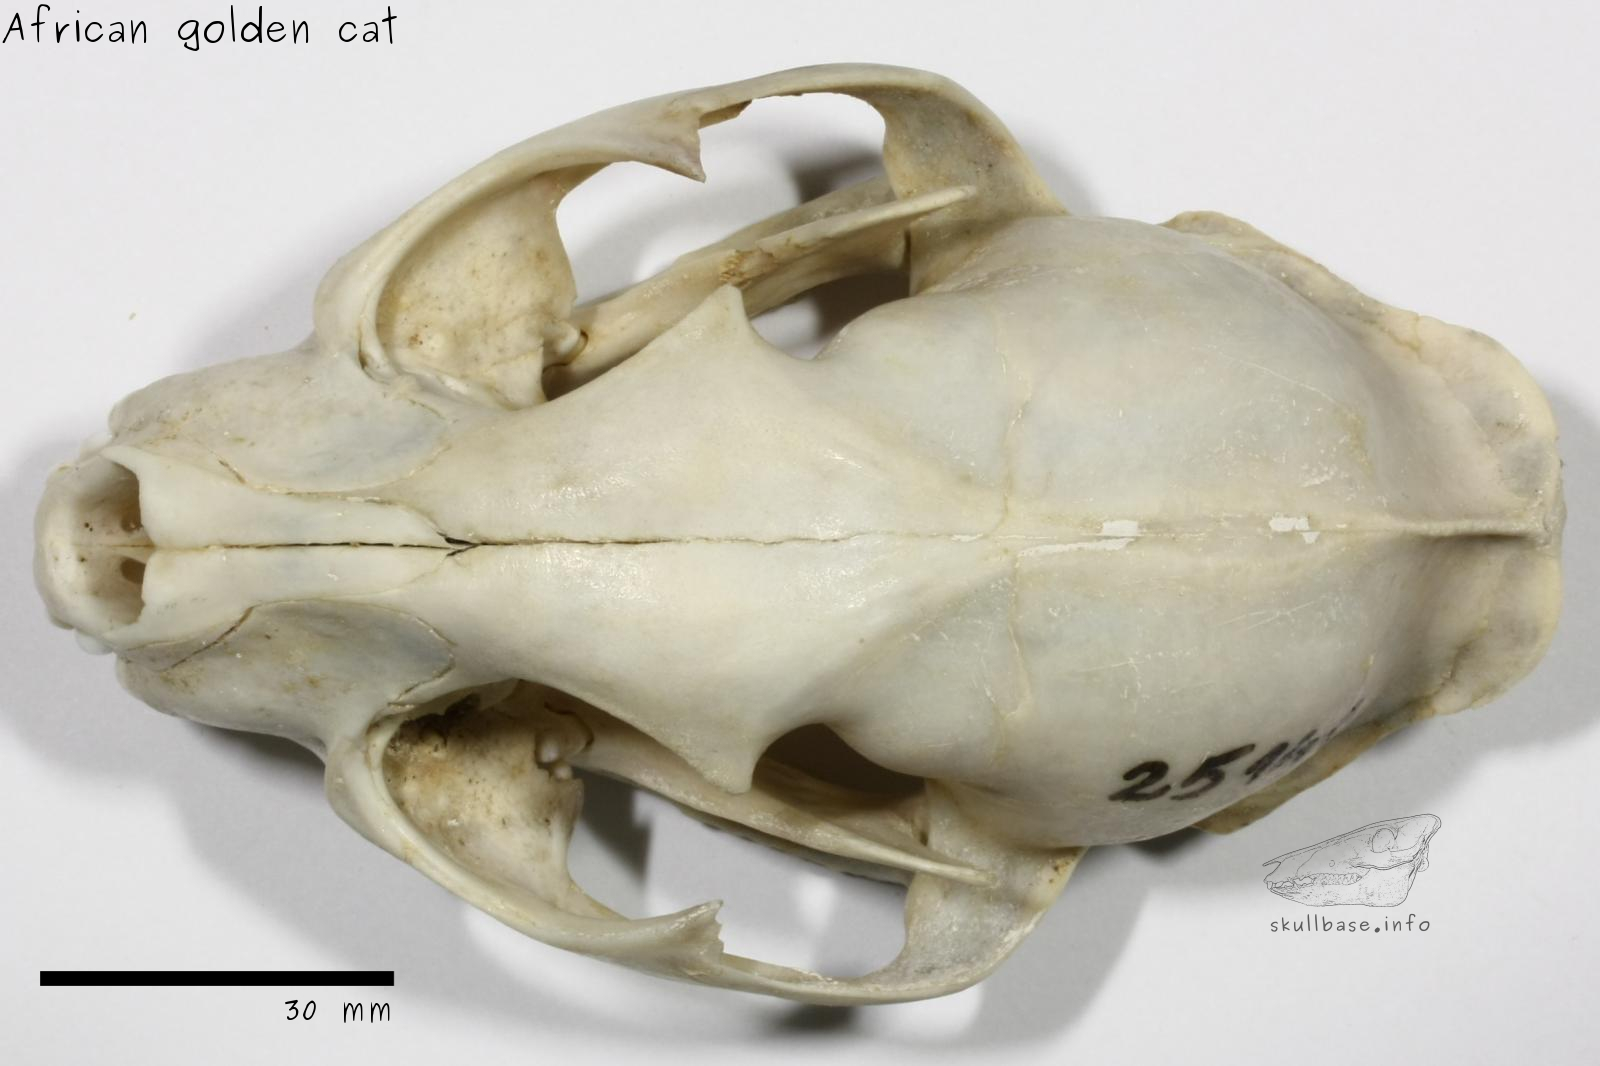 African golden cat (Caracal aurata) skull dorsal view